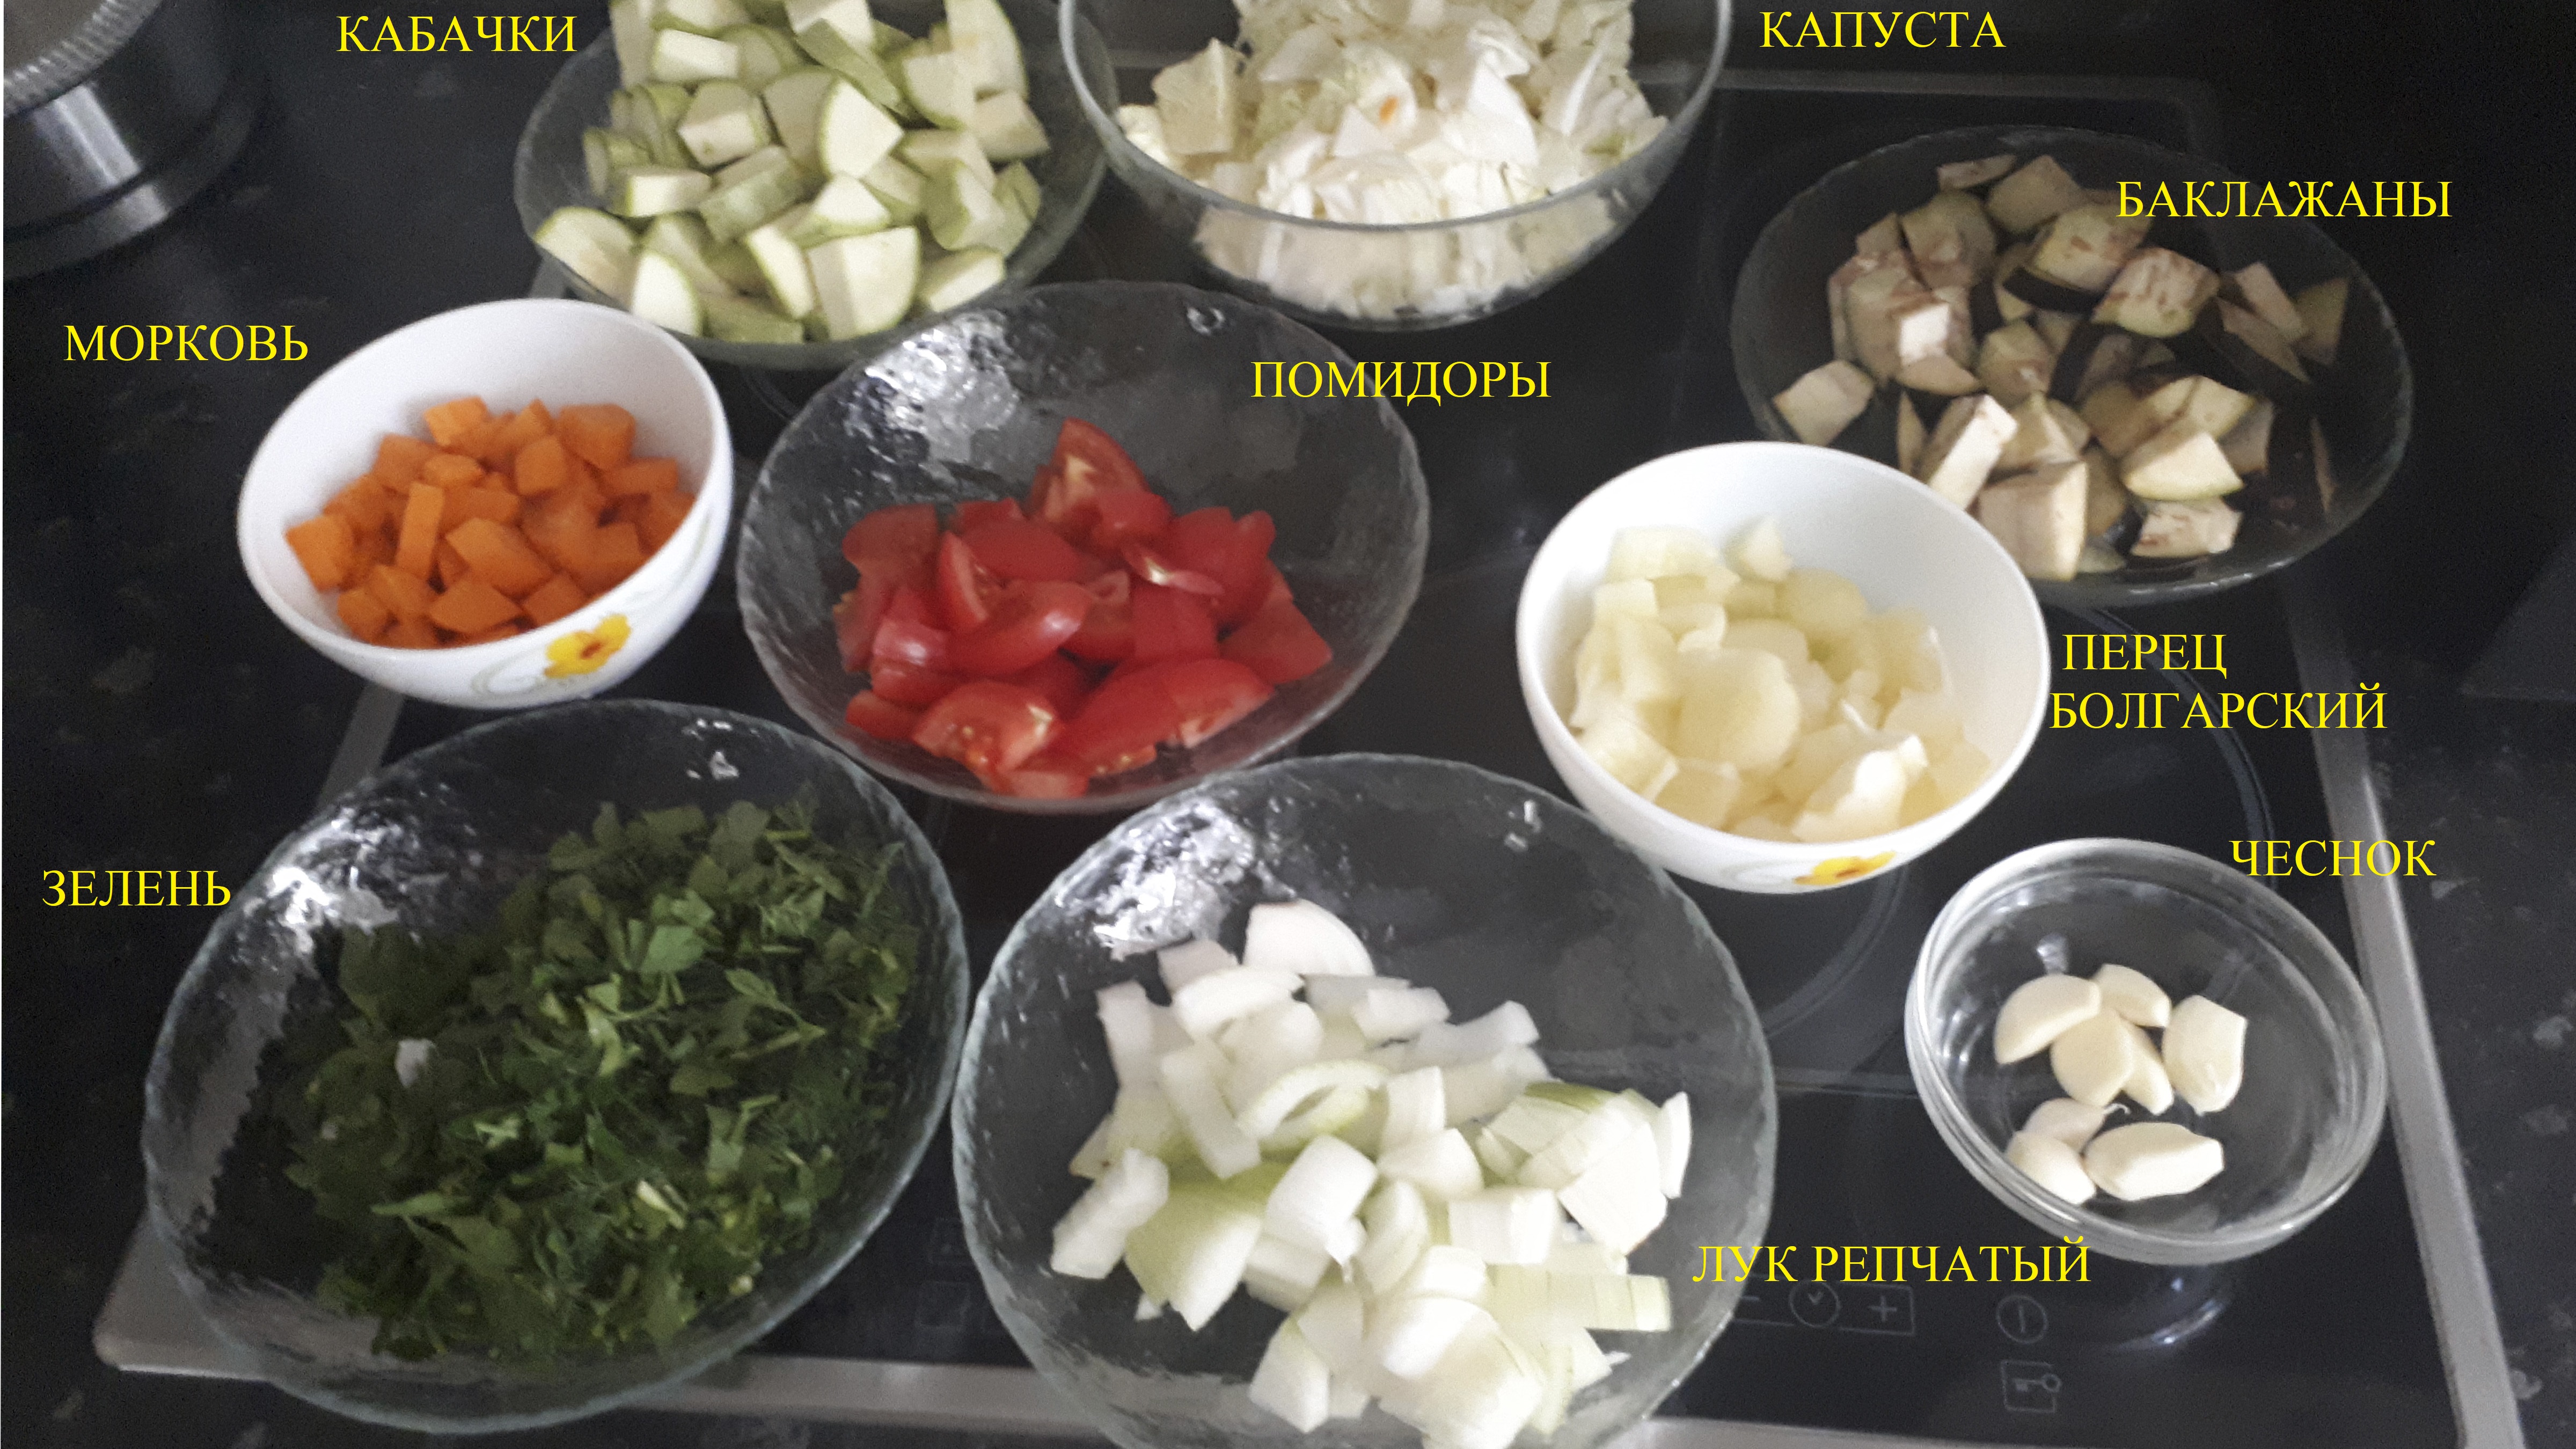 Состав продуктов для приготовления овощного рагу.